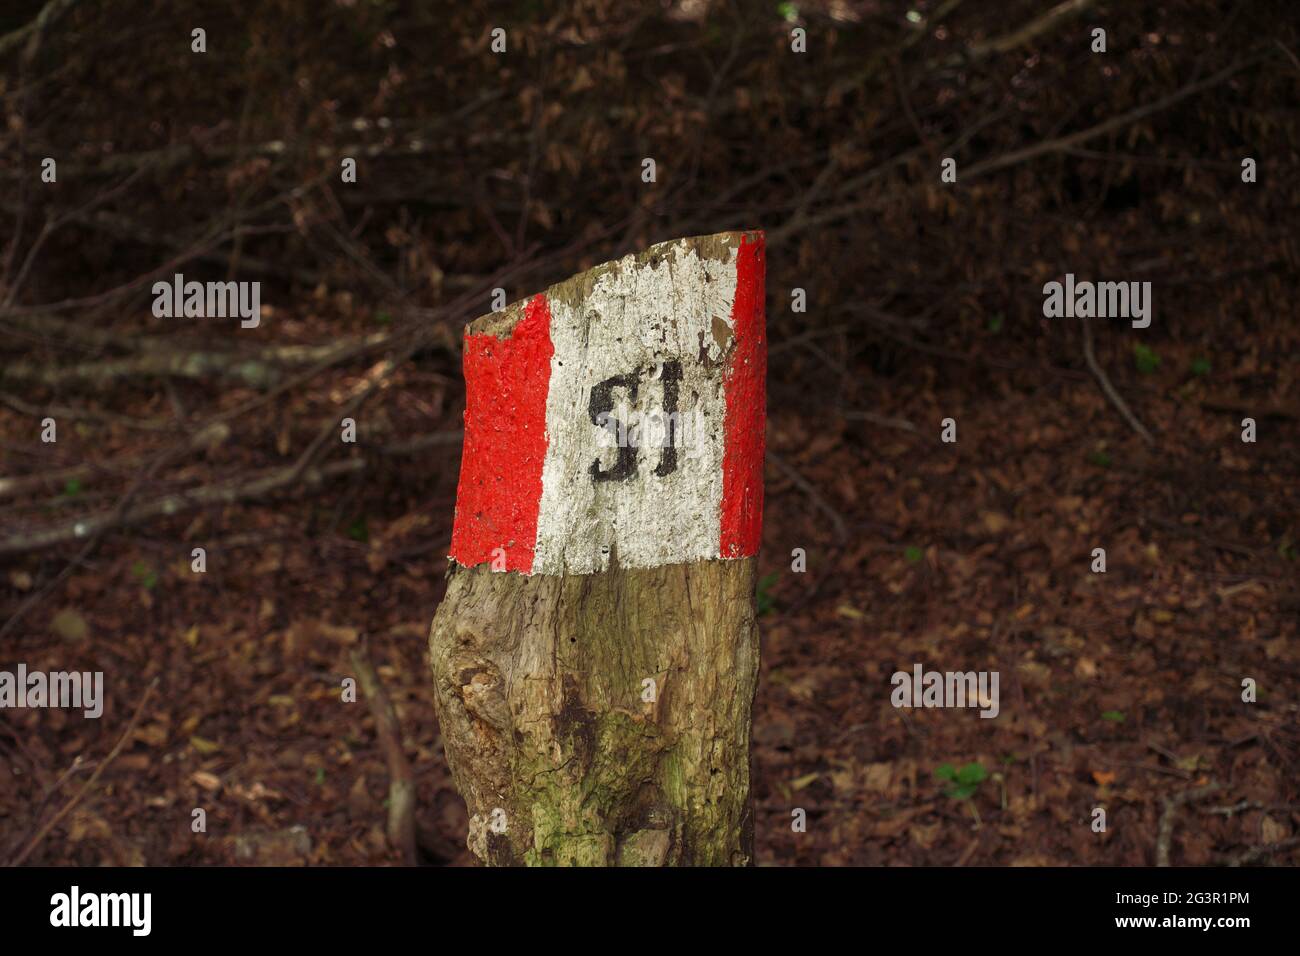 Actividad al aire libre en Sicilia marcador de rutas de senderismo en blanco y rojo en un tronco de la Reserva Natural de Nebrodi El texto 'SI' es el acrónimo de 'Sentiero Italia' Foto de stock